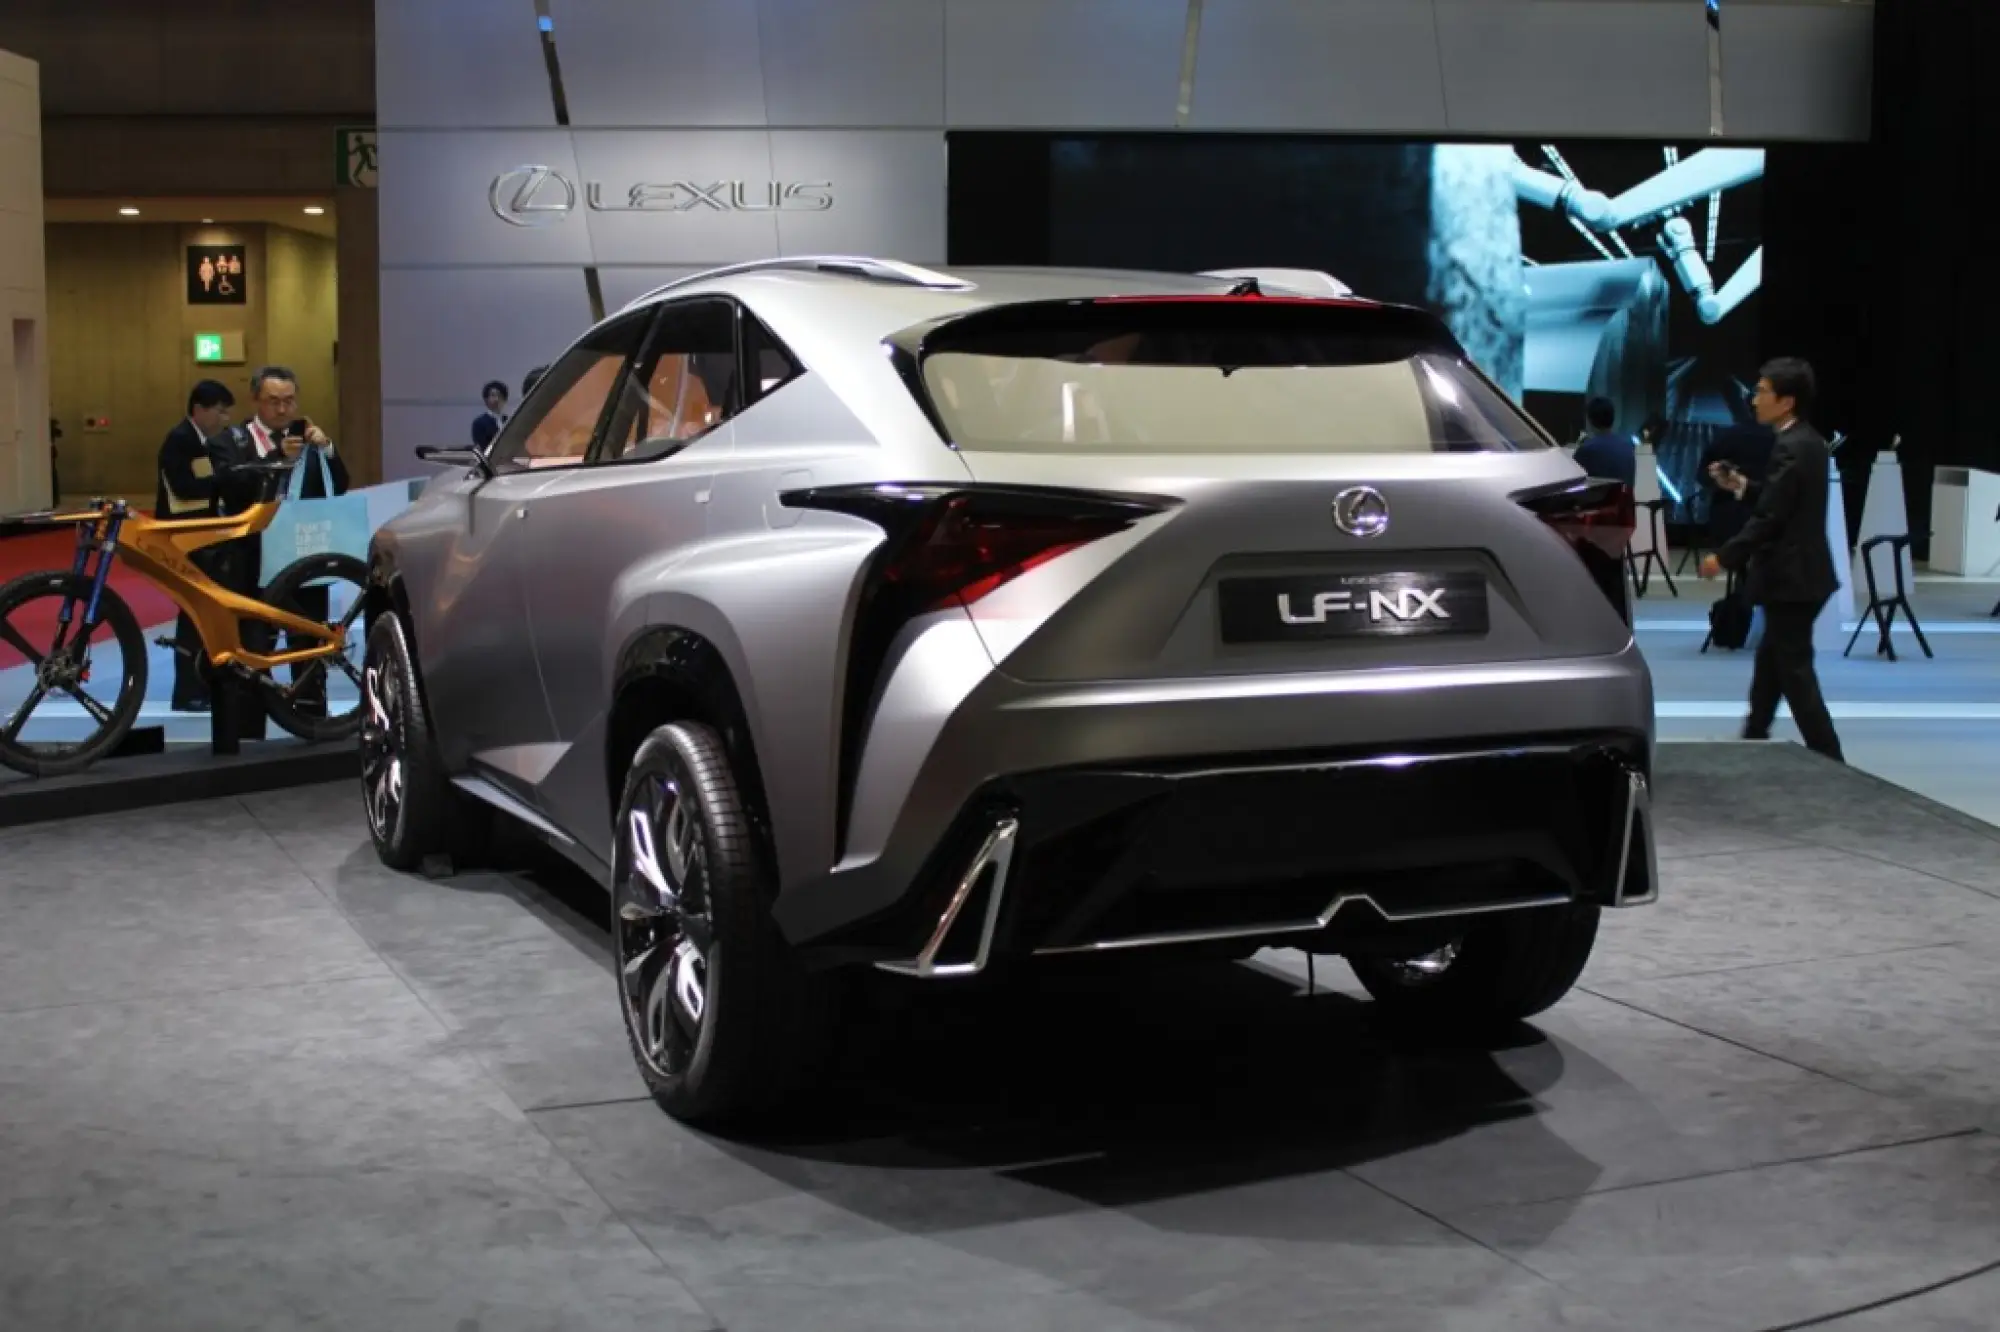 Lexus LF-NX Turbo Advanced Crossover Concept - Salone di Tokyo 2013 - 21